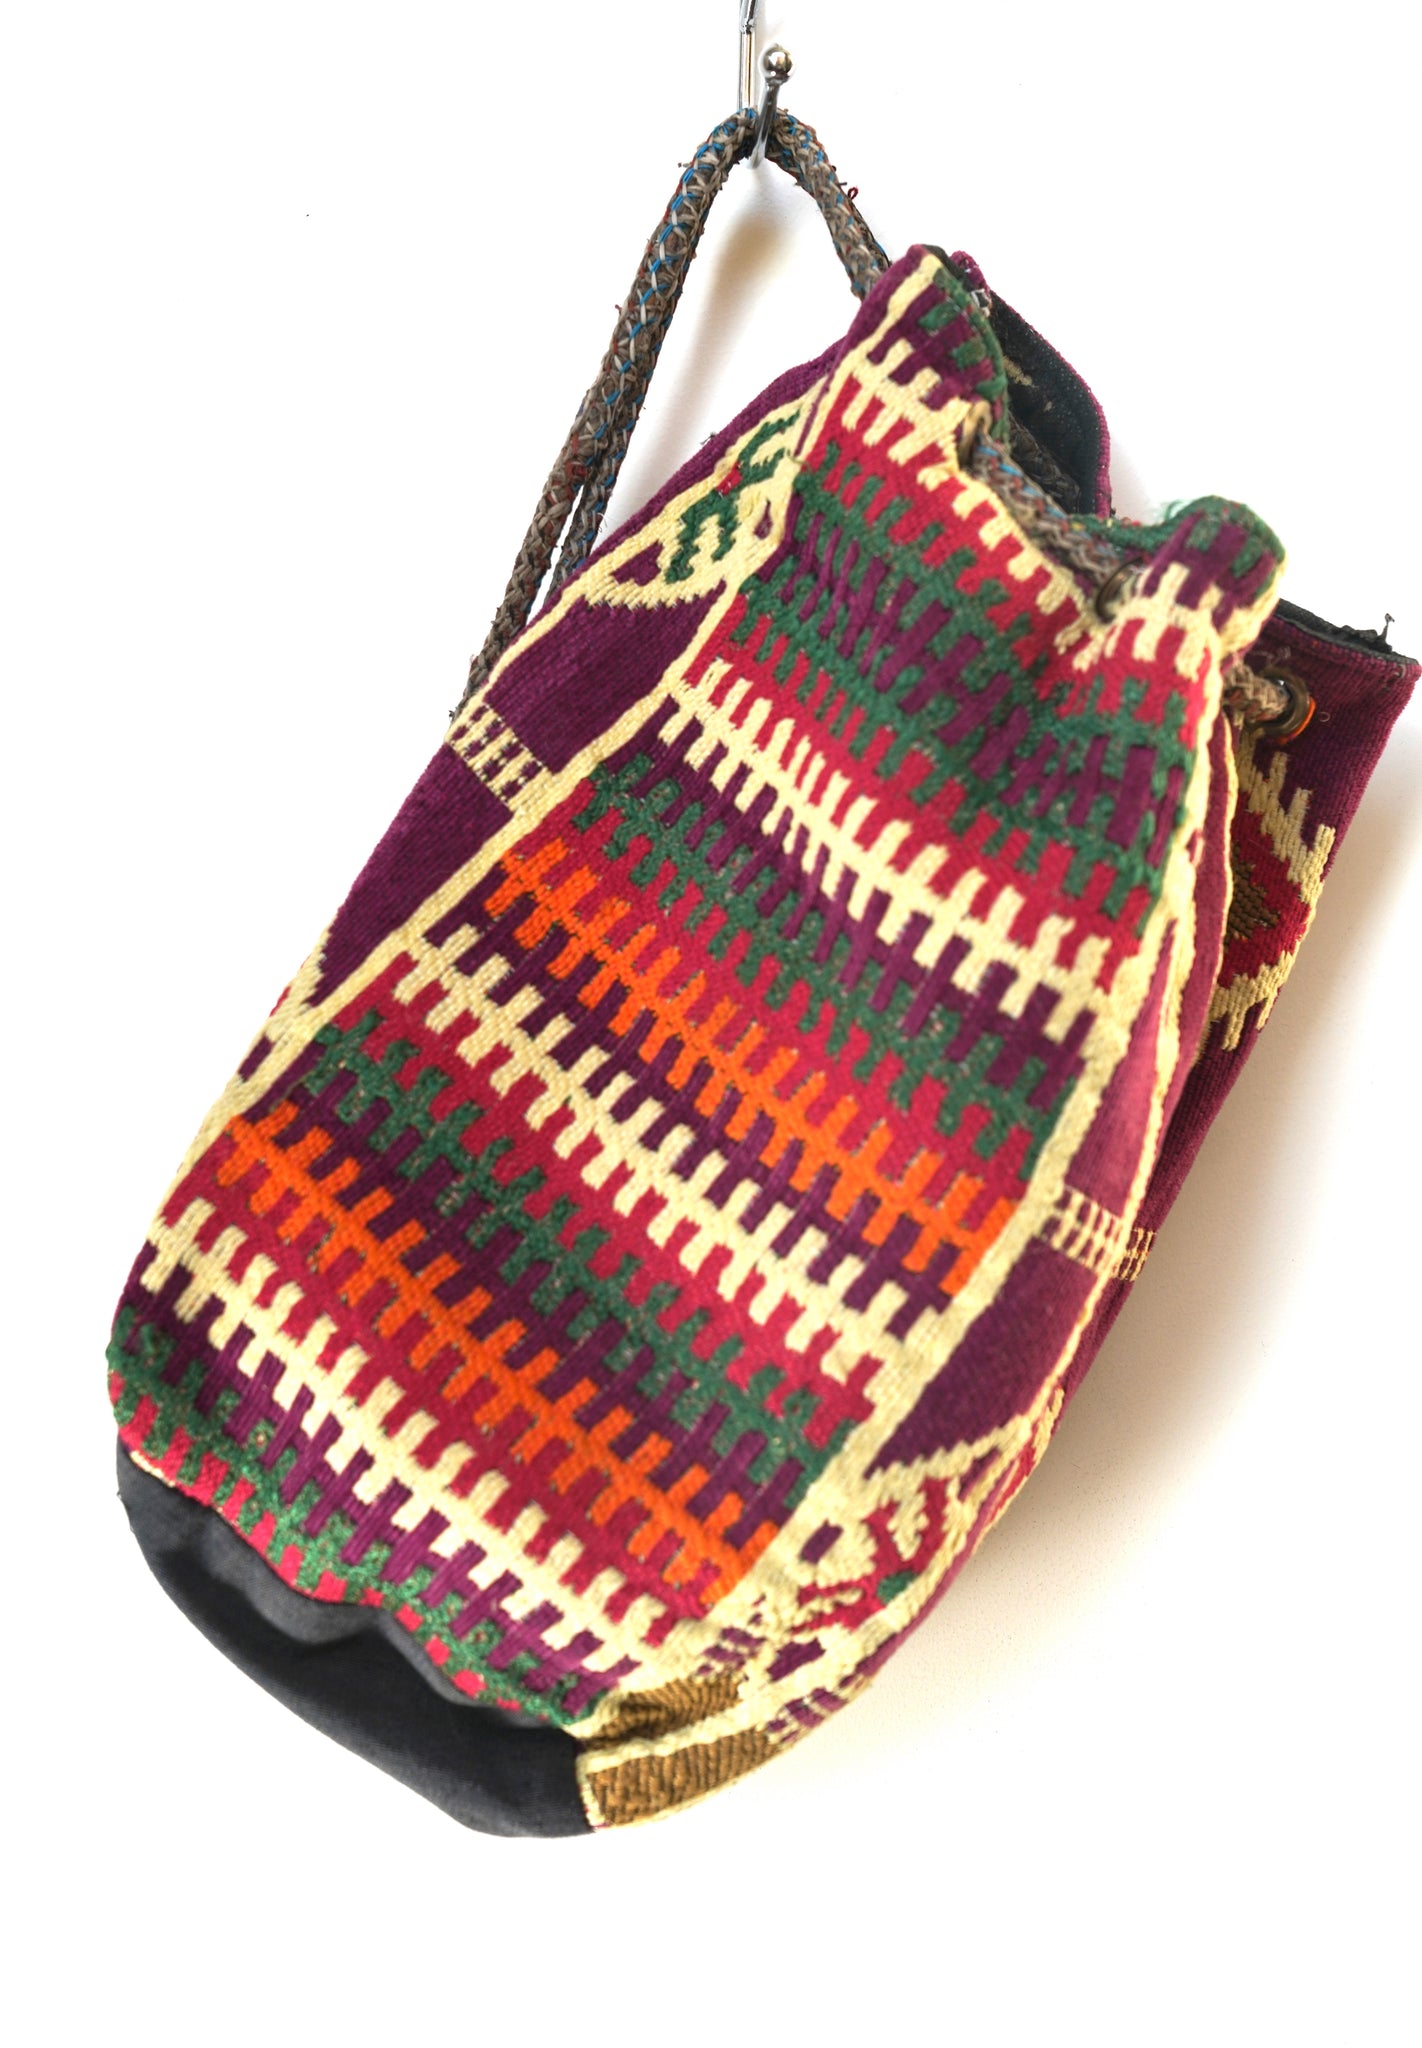 Cairo Vintage Saddle Shoulder Bags - 4 Colors